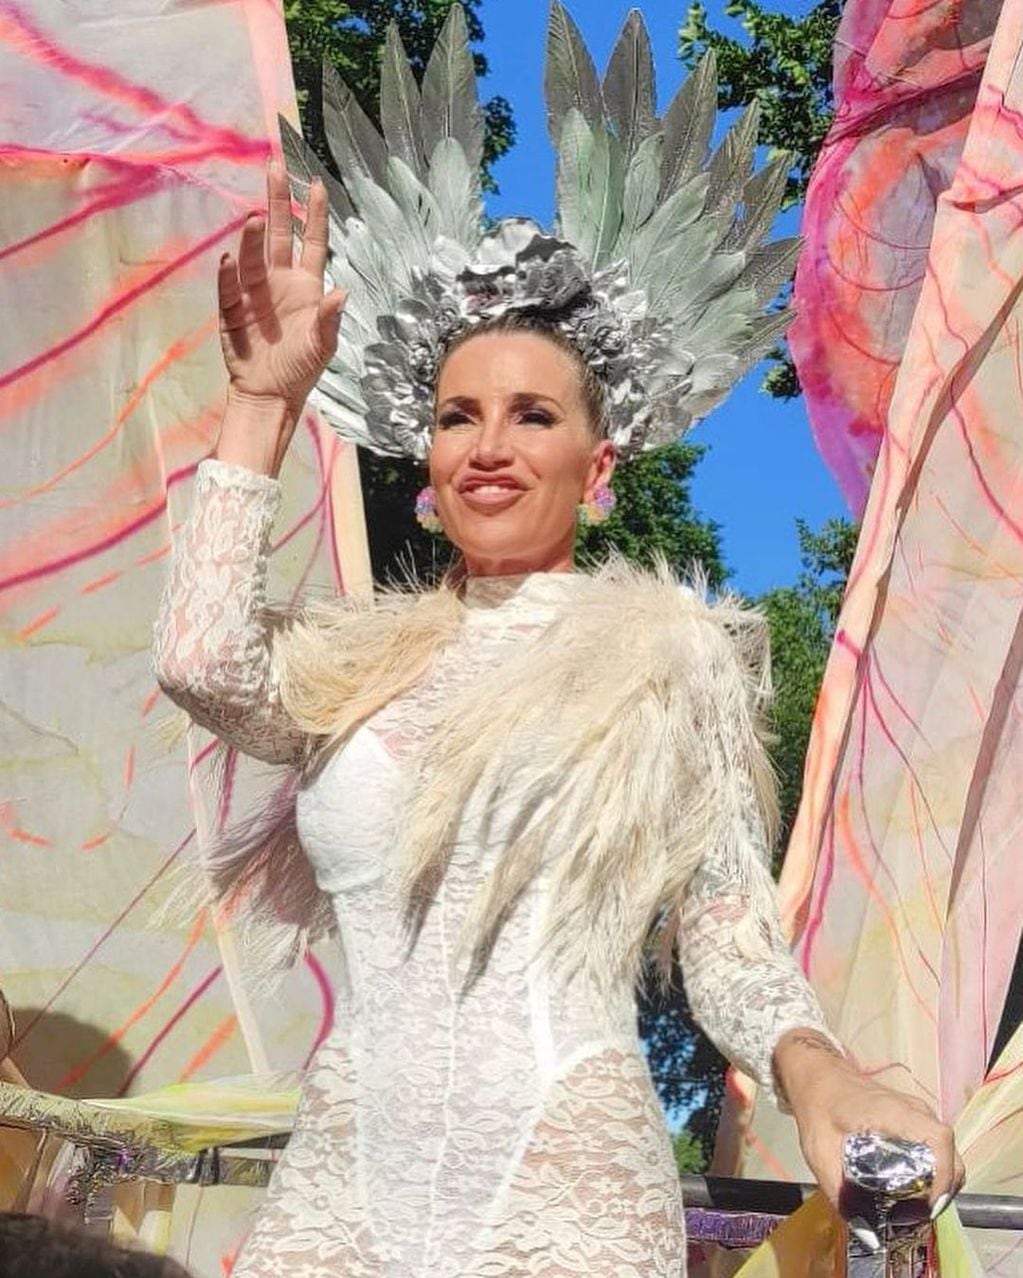 Encaje, plumas y a puro baile, así deslumbró Flor Peña desde una carroza en la Marcha del Orgullo.